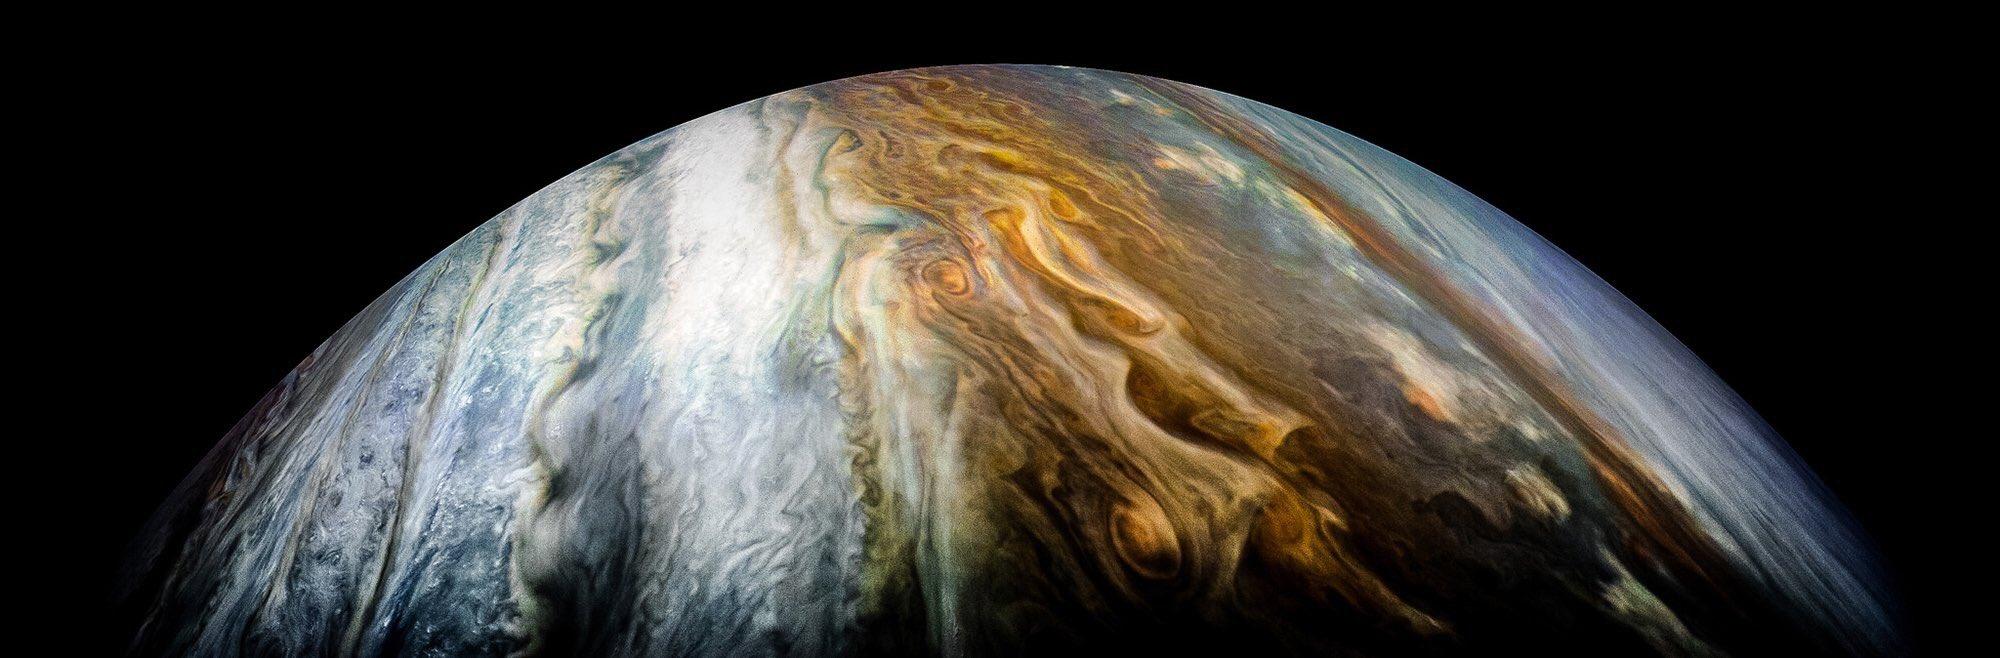 nasa最近公布的木星表面照片因为木星的大气层中只有少量的水,同时